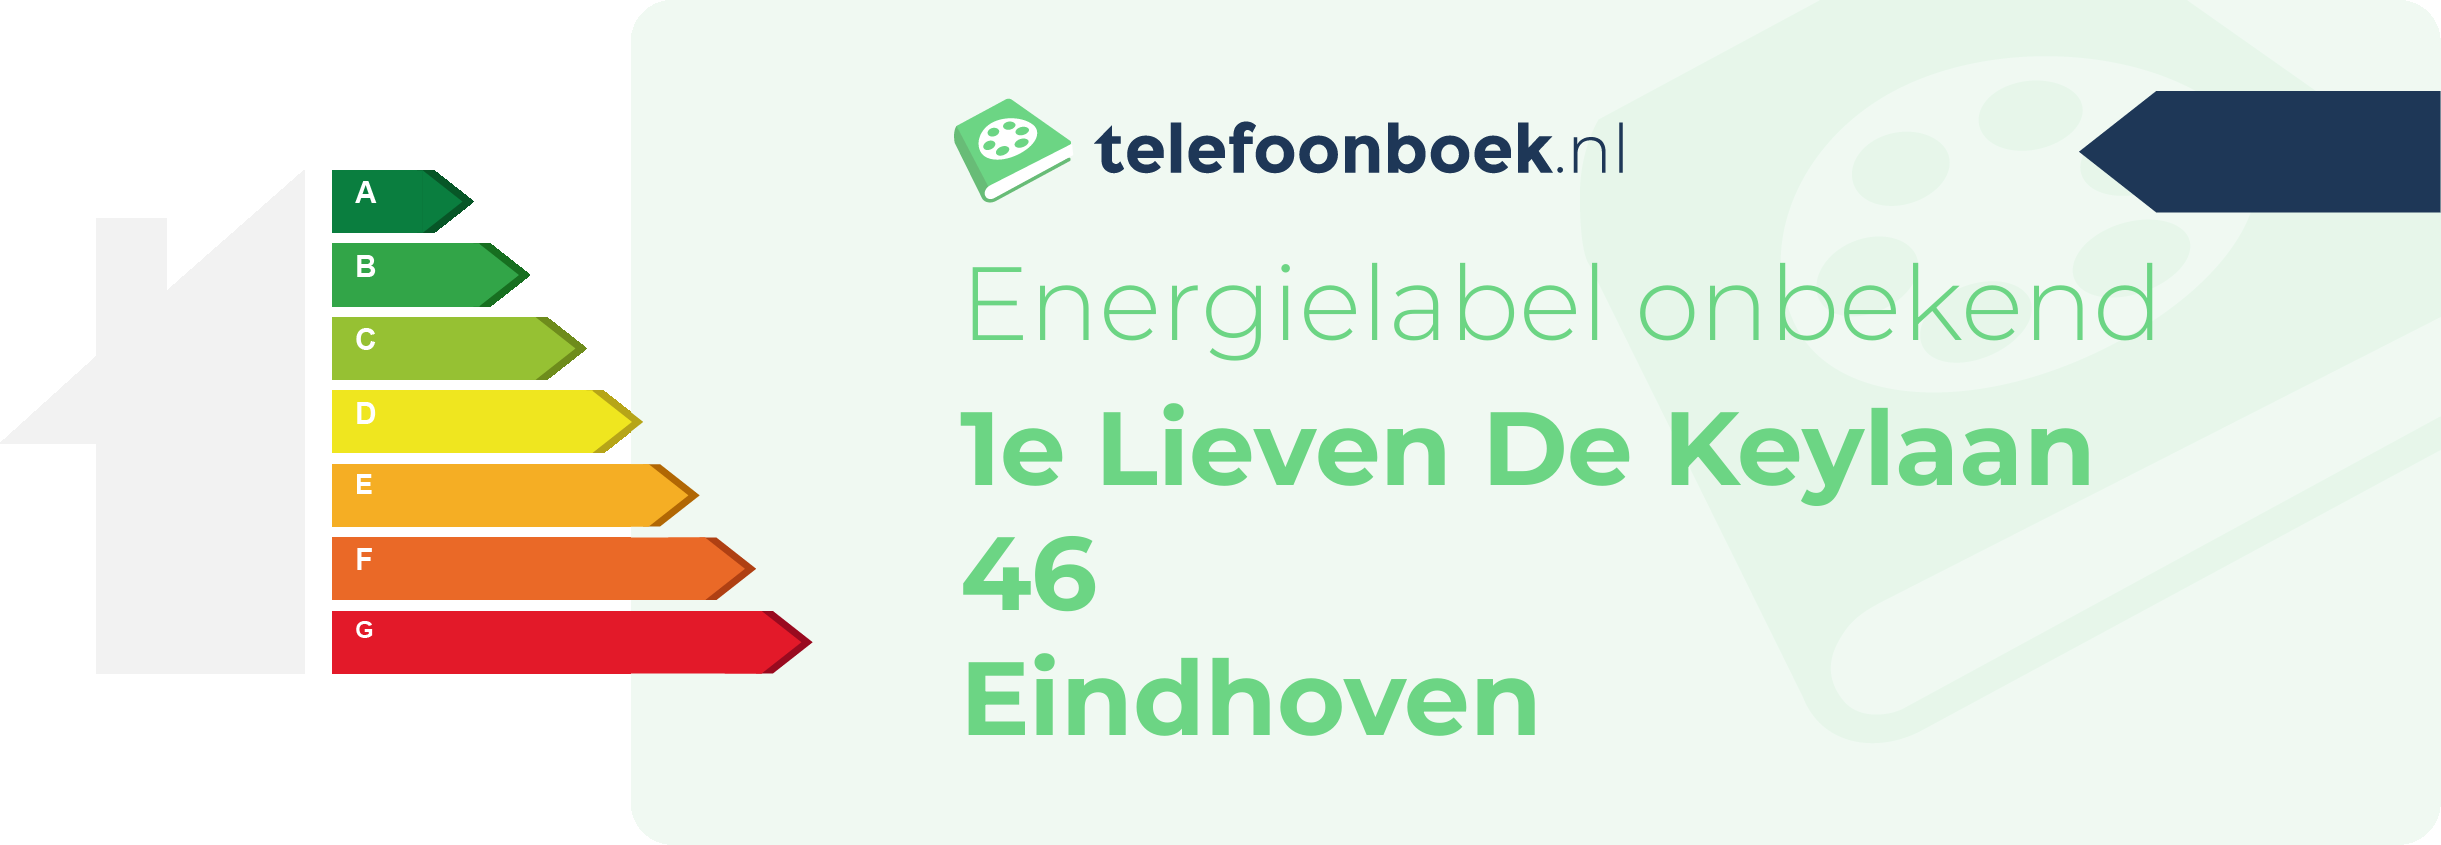 Energielabel 1e Lieven De Keylaan 46 Eindhoven